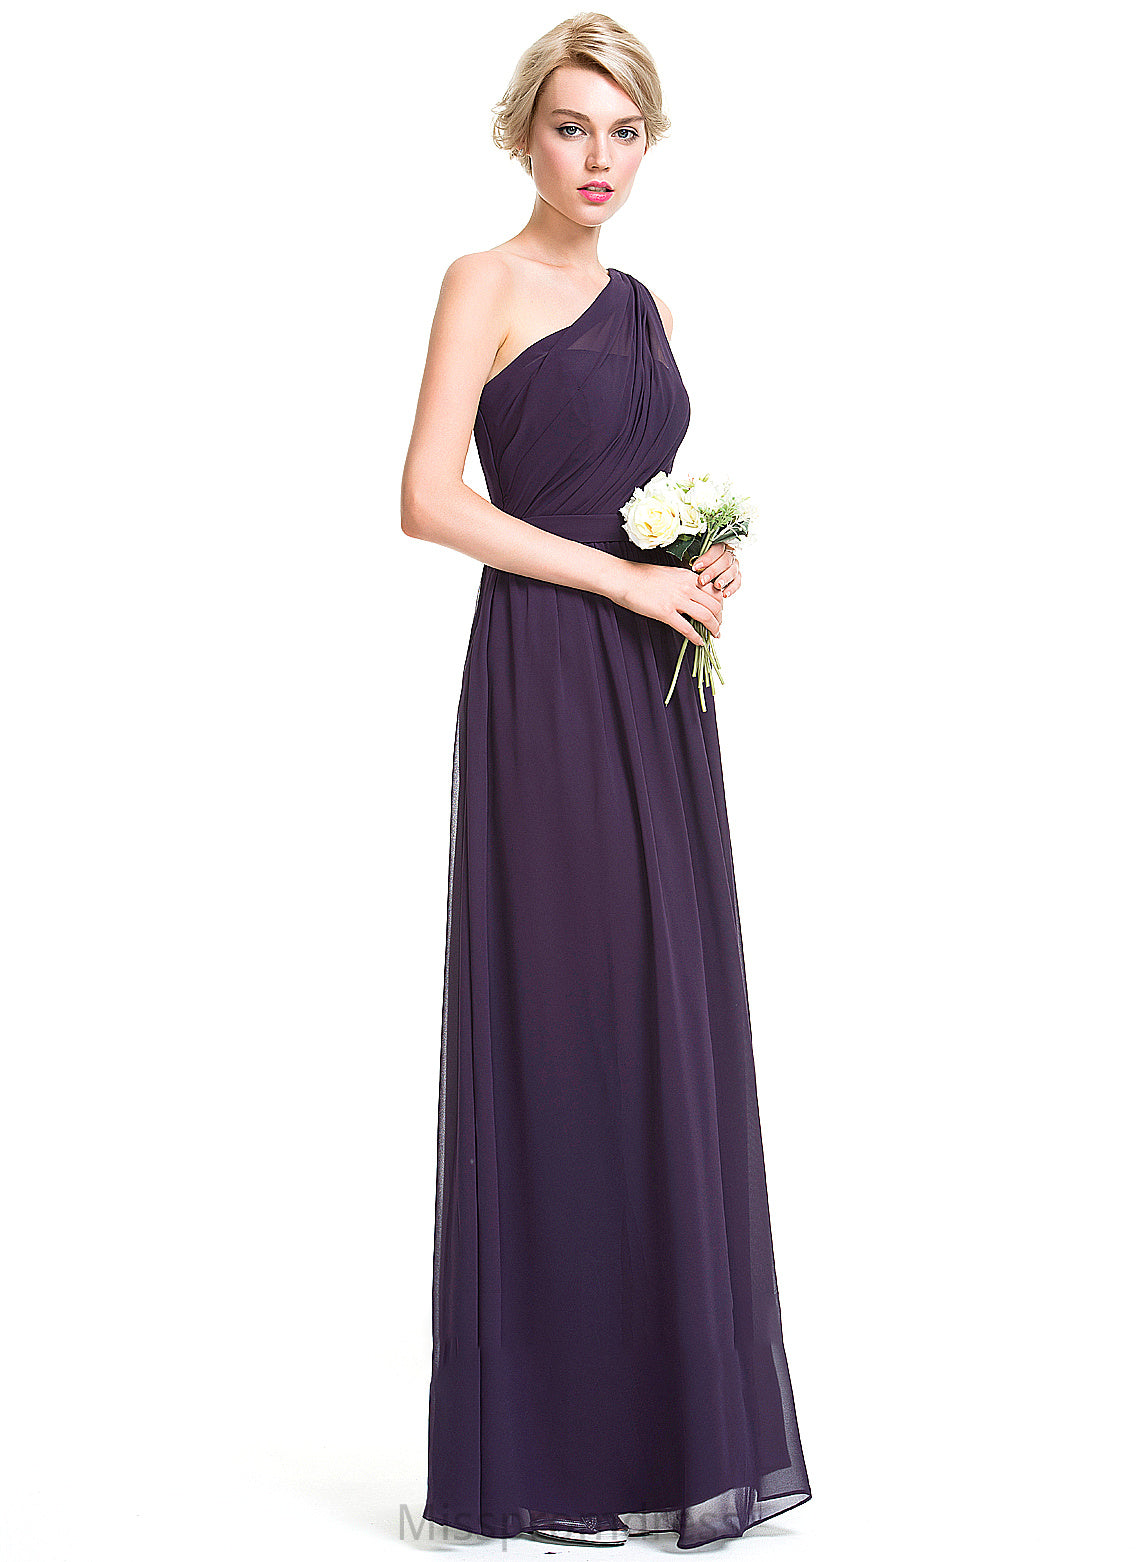 Length Fabric Ruffle Neckline One-Shoulder Silhouette Embellishment Floor-Length A-Line Marina A-Line/Princess Floor Length Bridesmaid Dresses